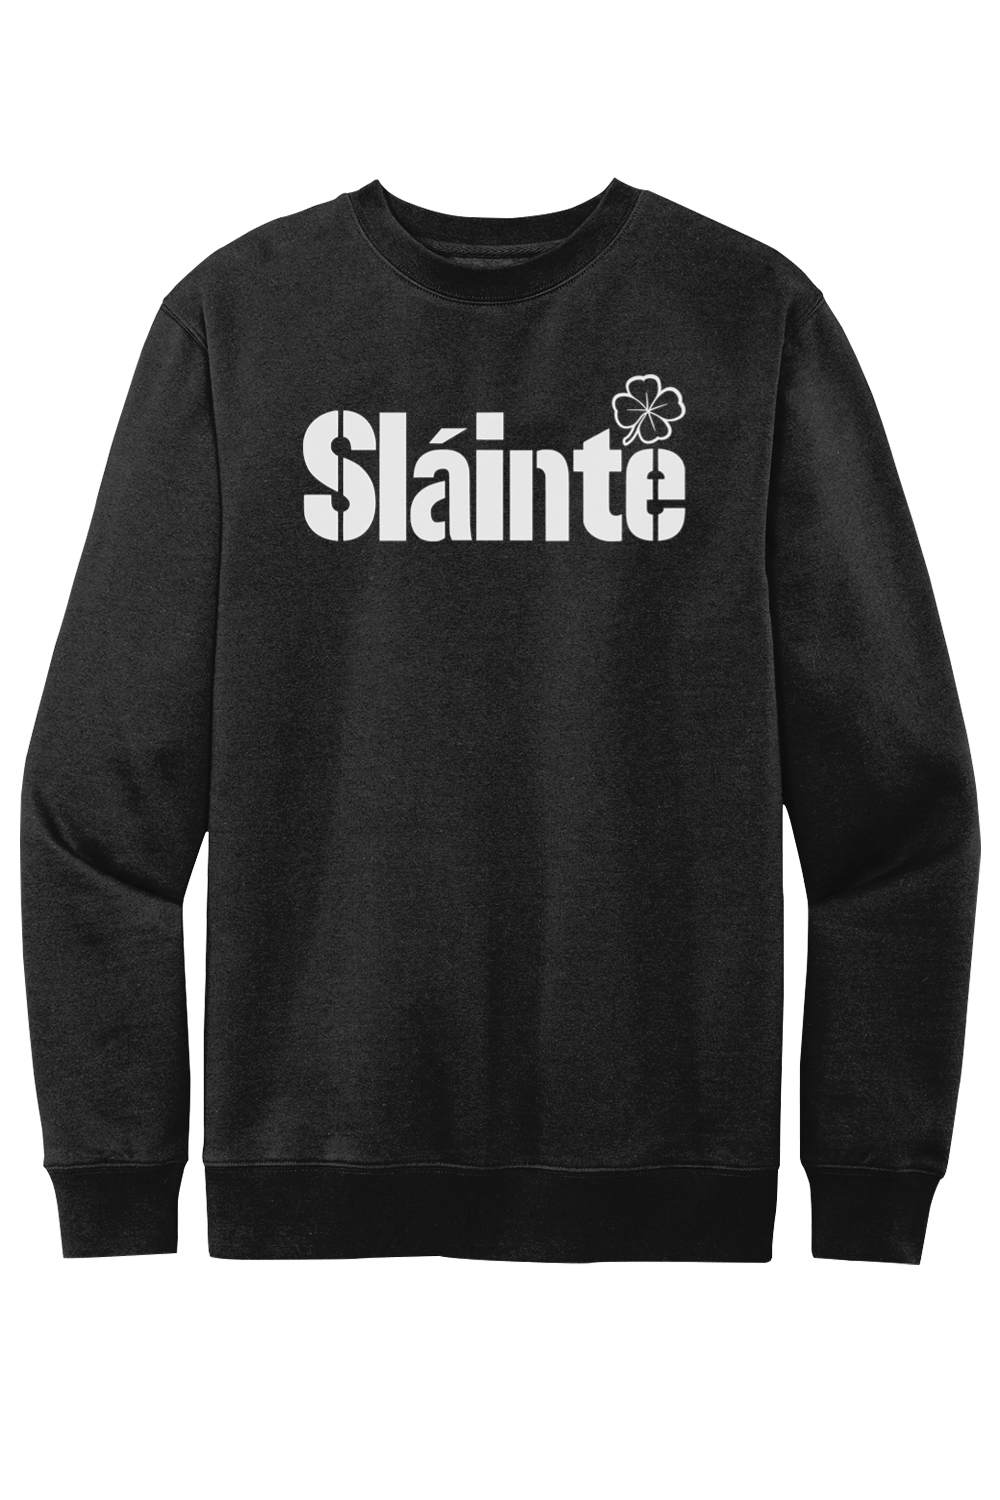 Slainte - Steel City - Fleece Crewneck Sweatshirt - Yinzylvania